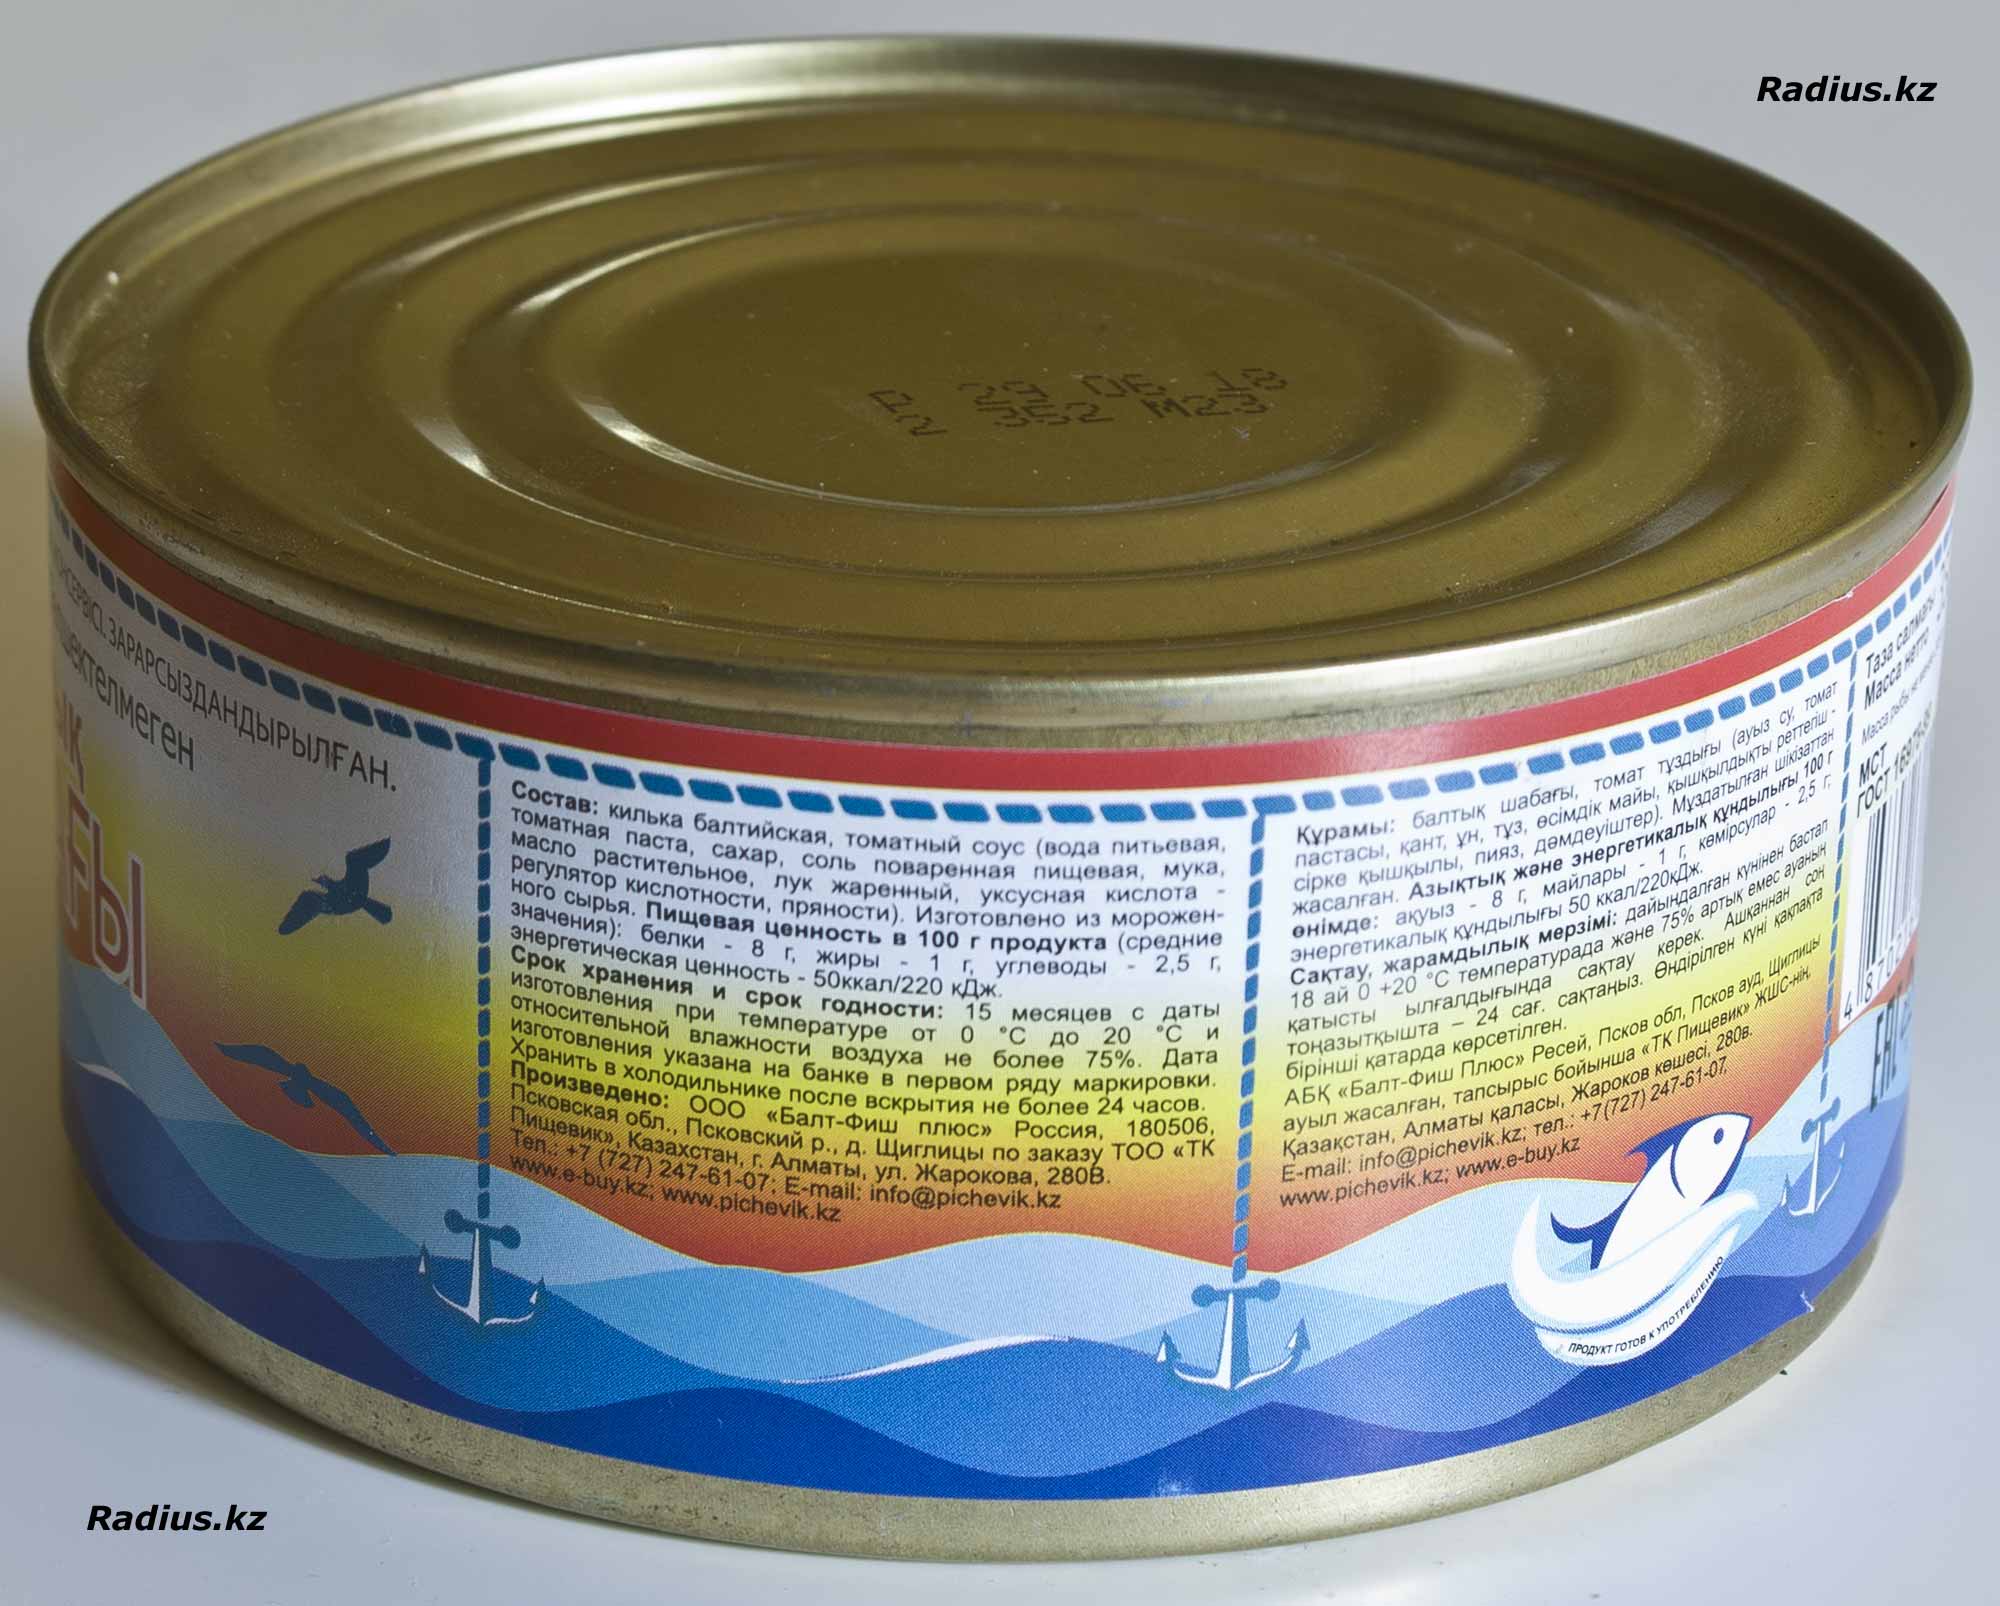 Состав консервы Царский улов - Килька балтийская в томатном соусе